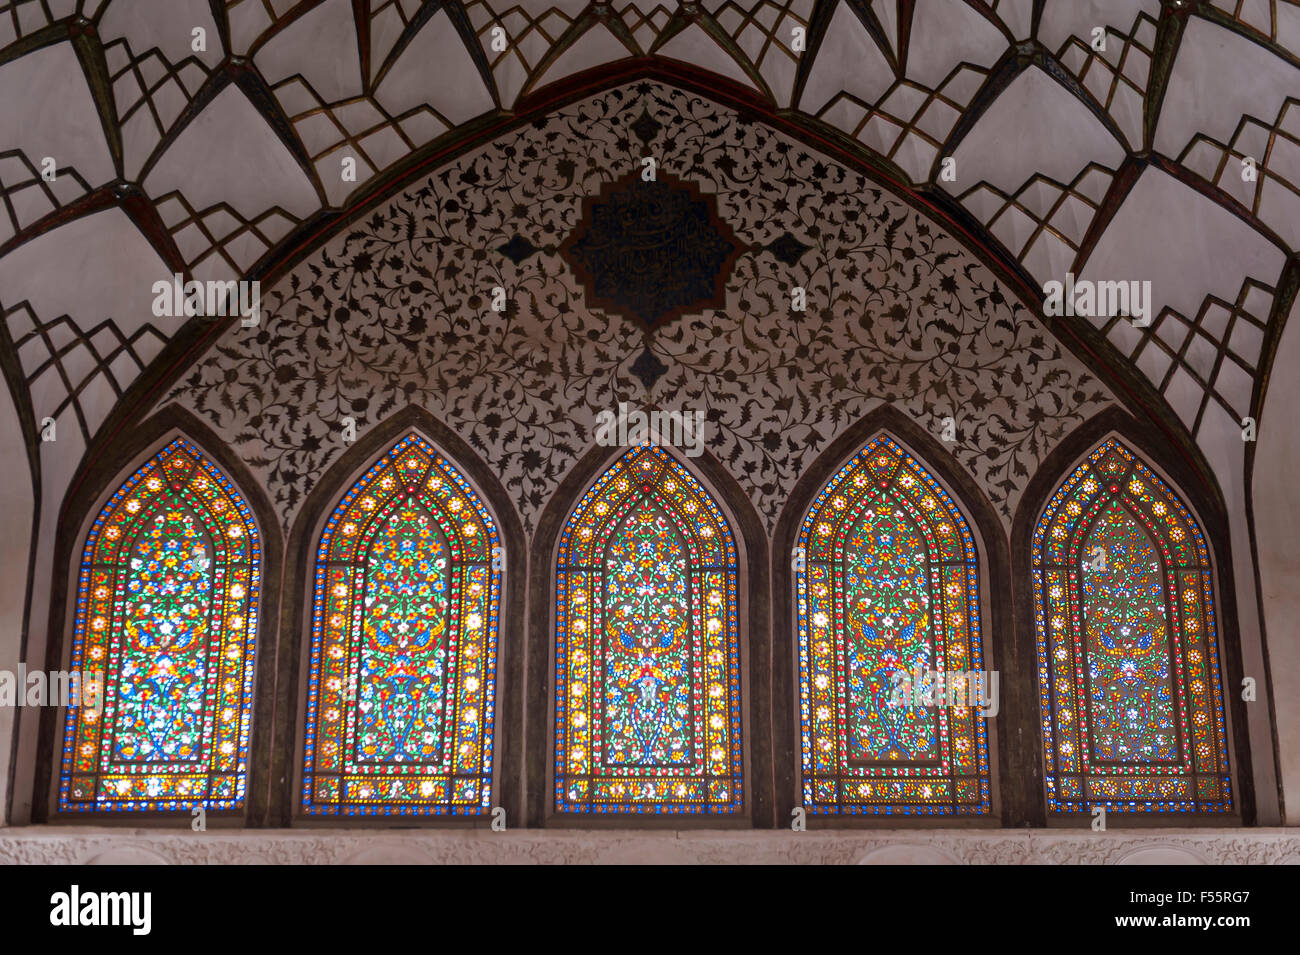 Fenêtres en verre coloré, Chane-ye Tabatabayi, ancien hôtel particulier, Kashan, Iran, province d'Ispahan Banque D'Images